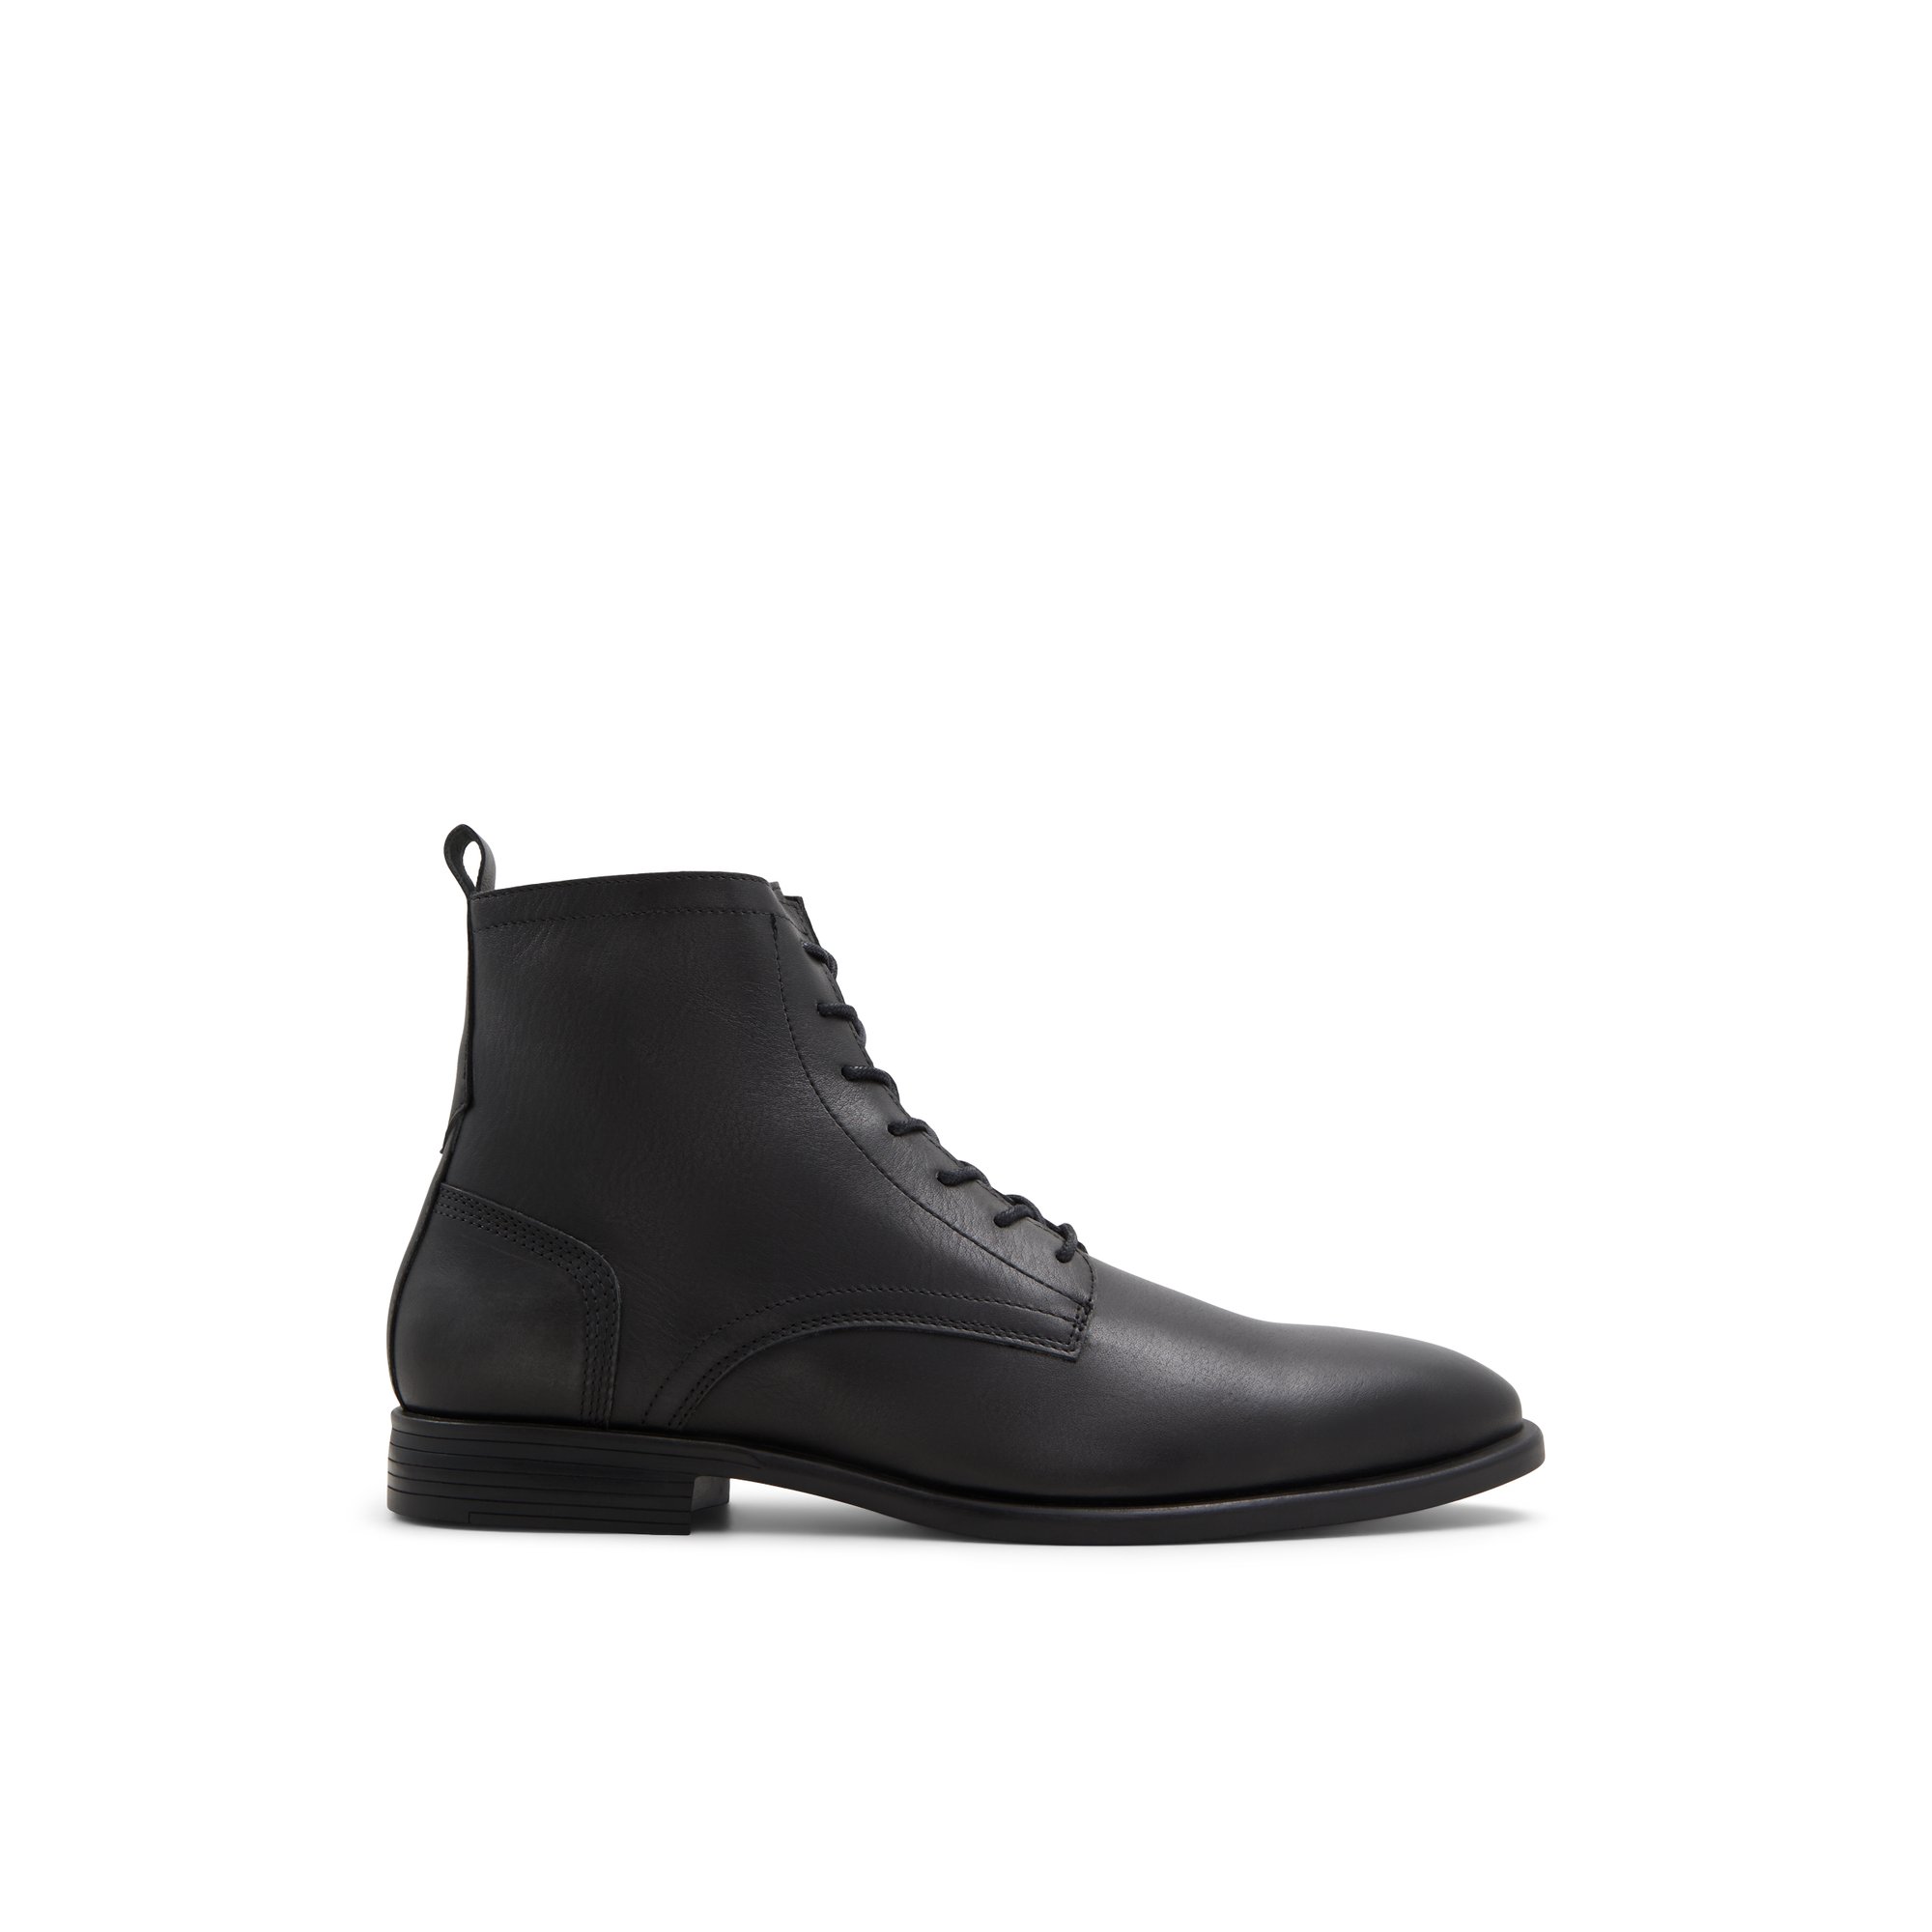 ALDO Fischer - Men's Boots - Black